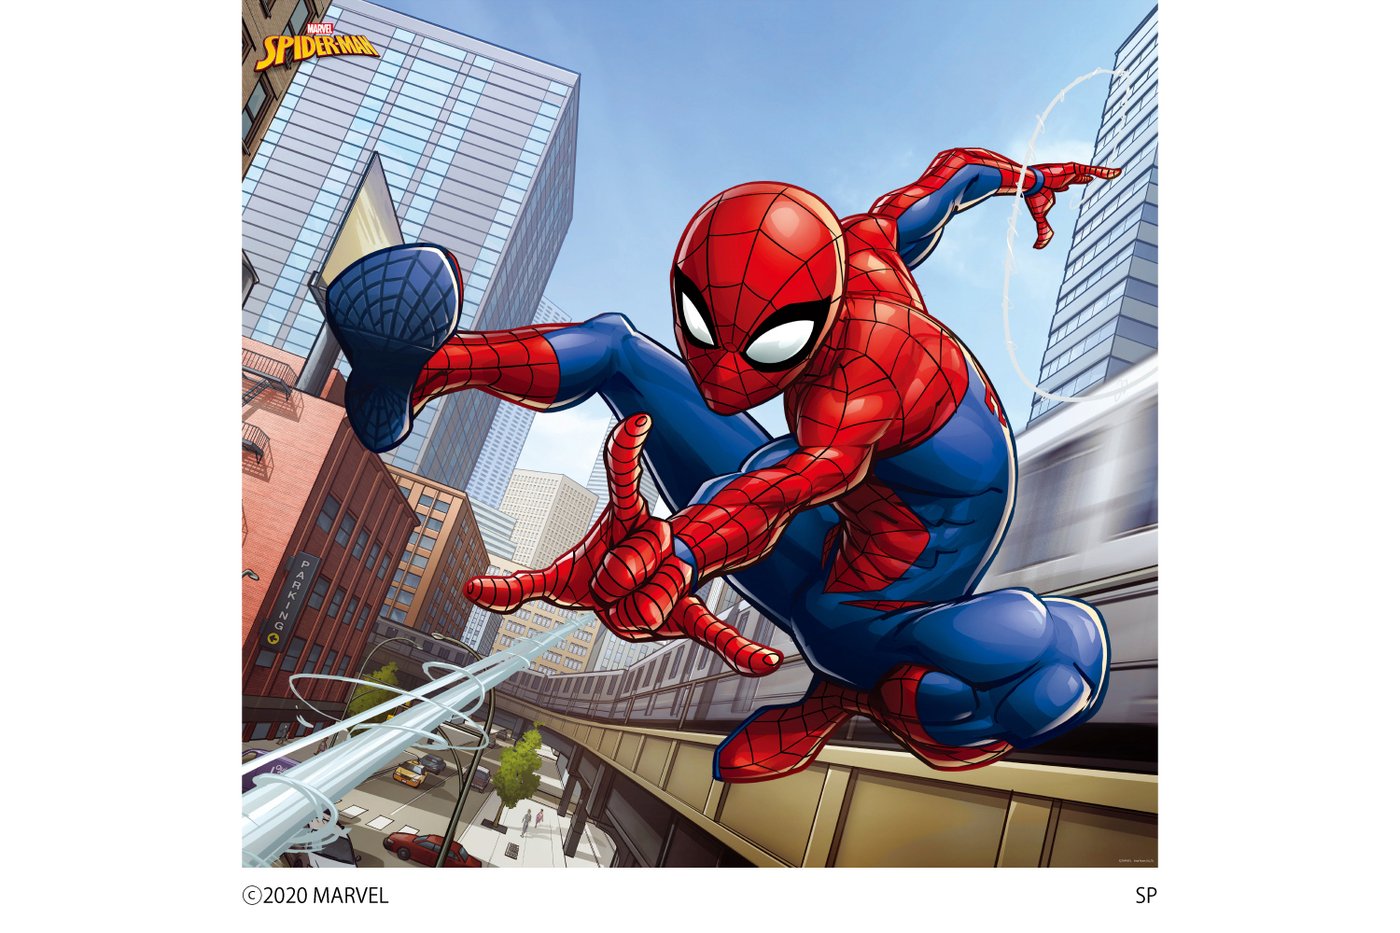 Marvel マーベル Spider Man 壁紙素材ウォールステッカー スパイダーマン 6倚子類型 スパイダーマン Wall Paper M027 6 プリテック Earthkitchen Ph